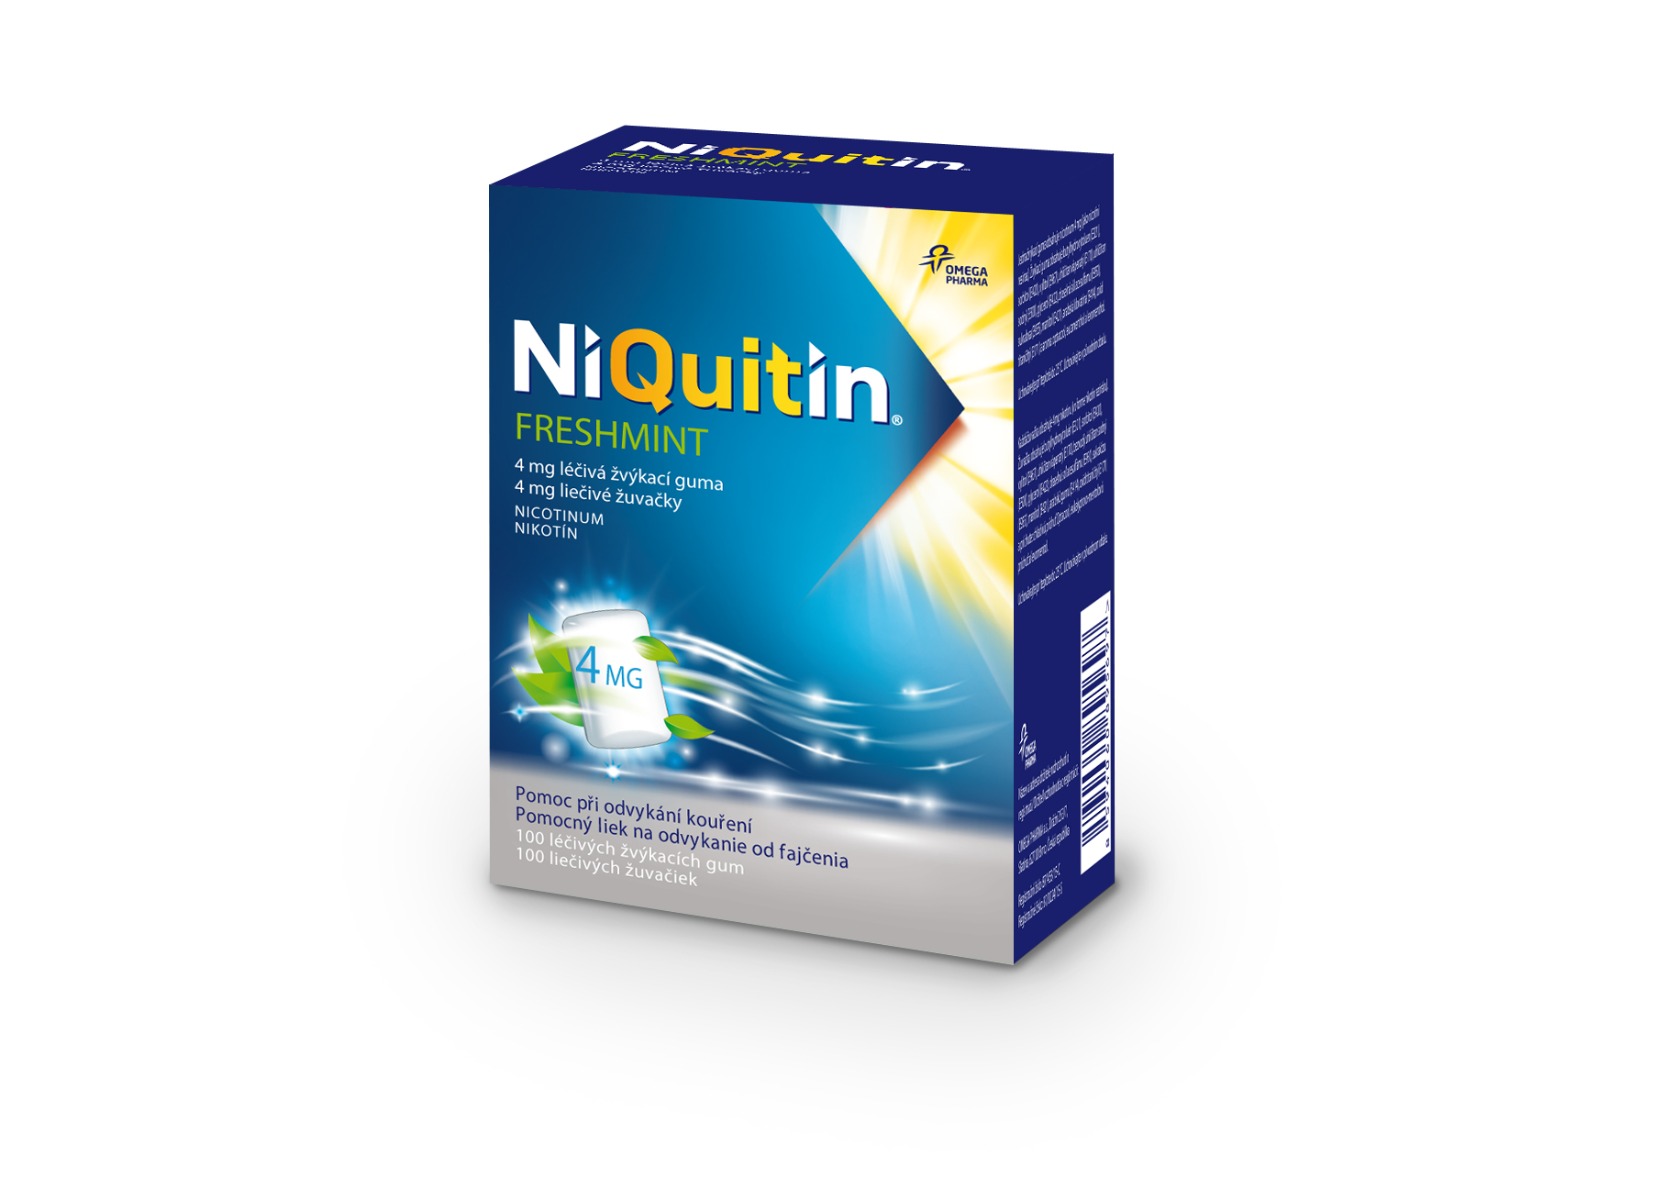 Niquitin Freshmint 4 mg léčivá žvýkací guma 100 ks Niquitin